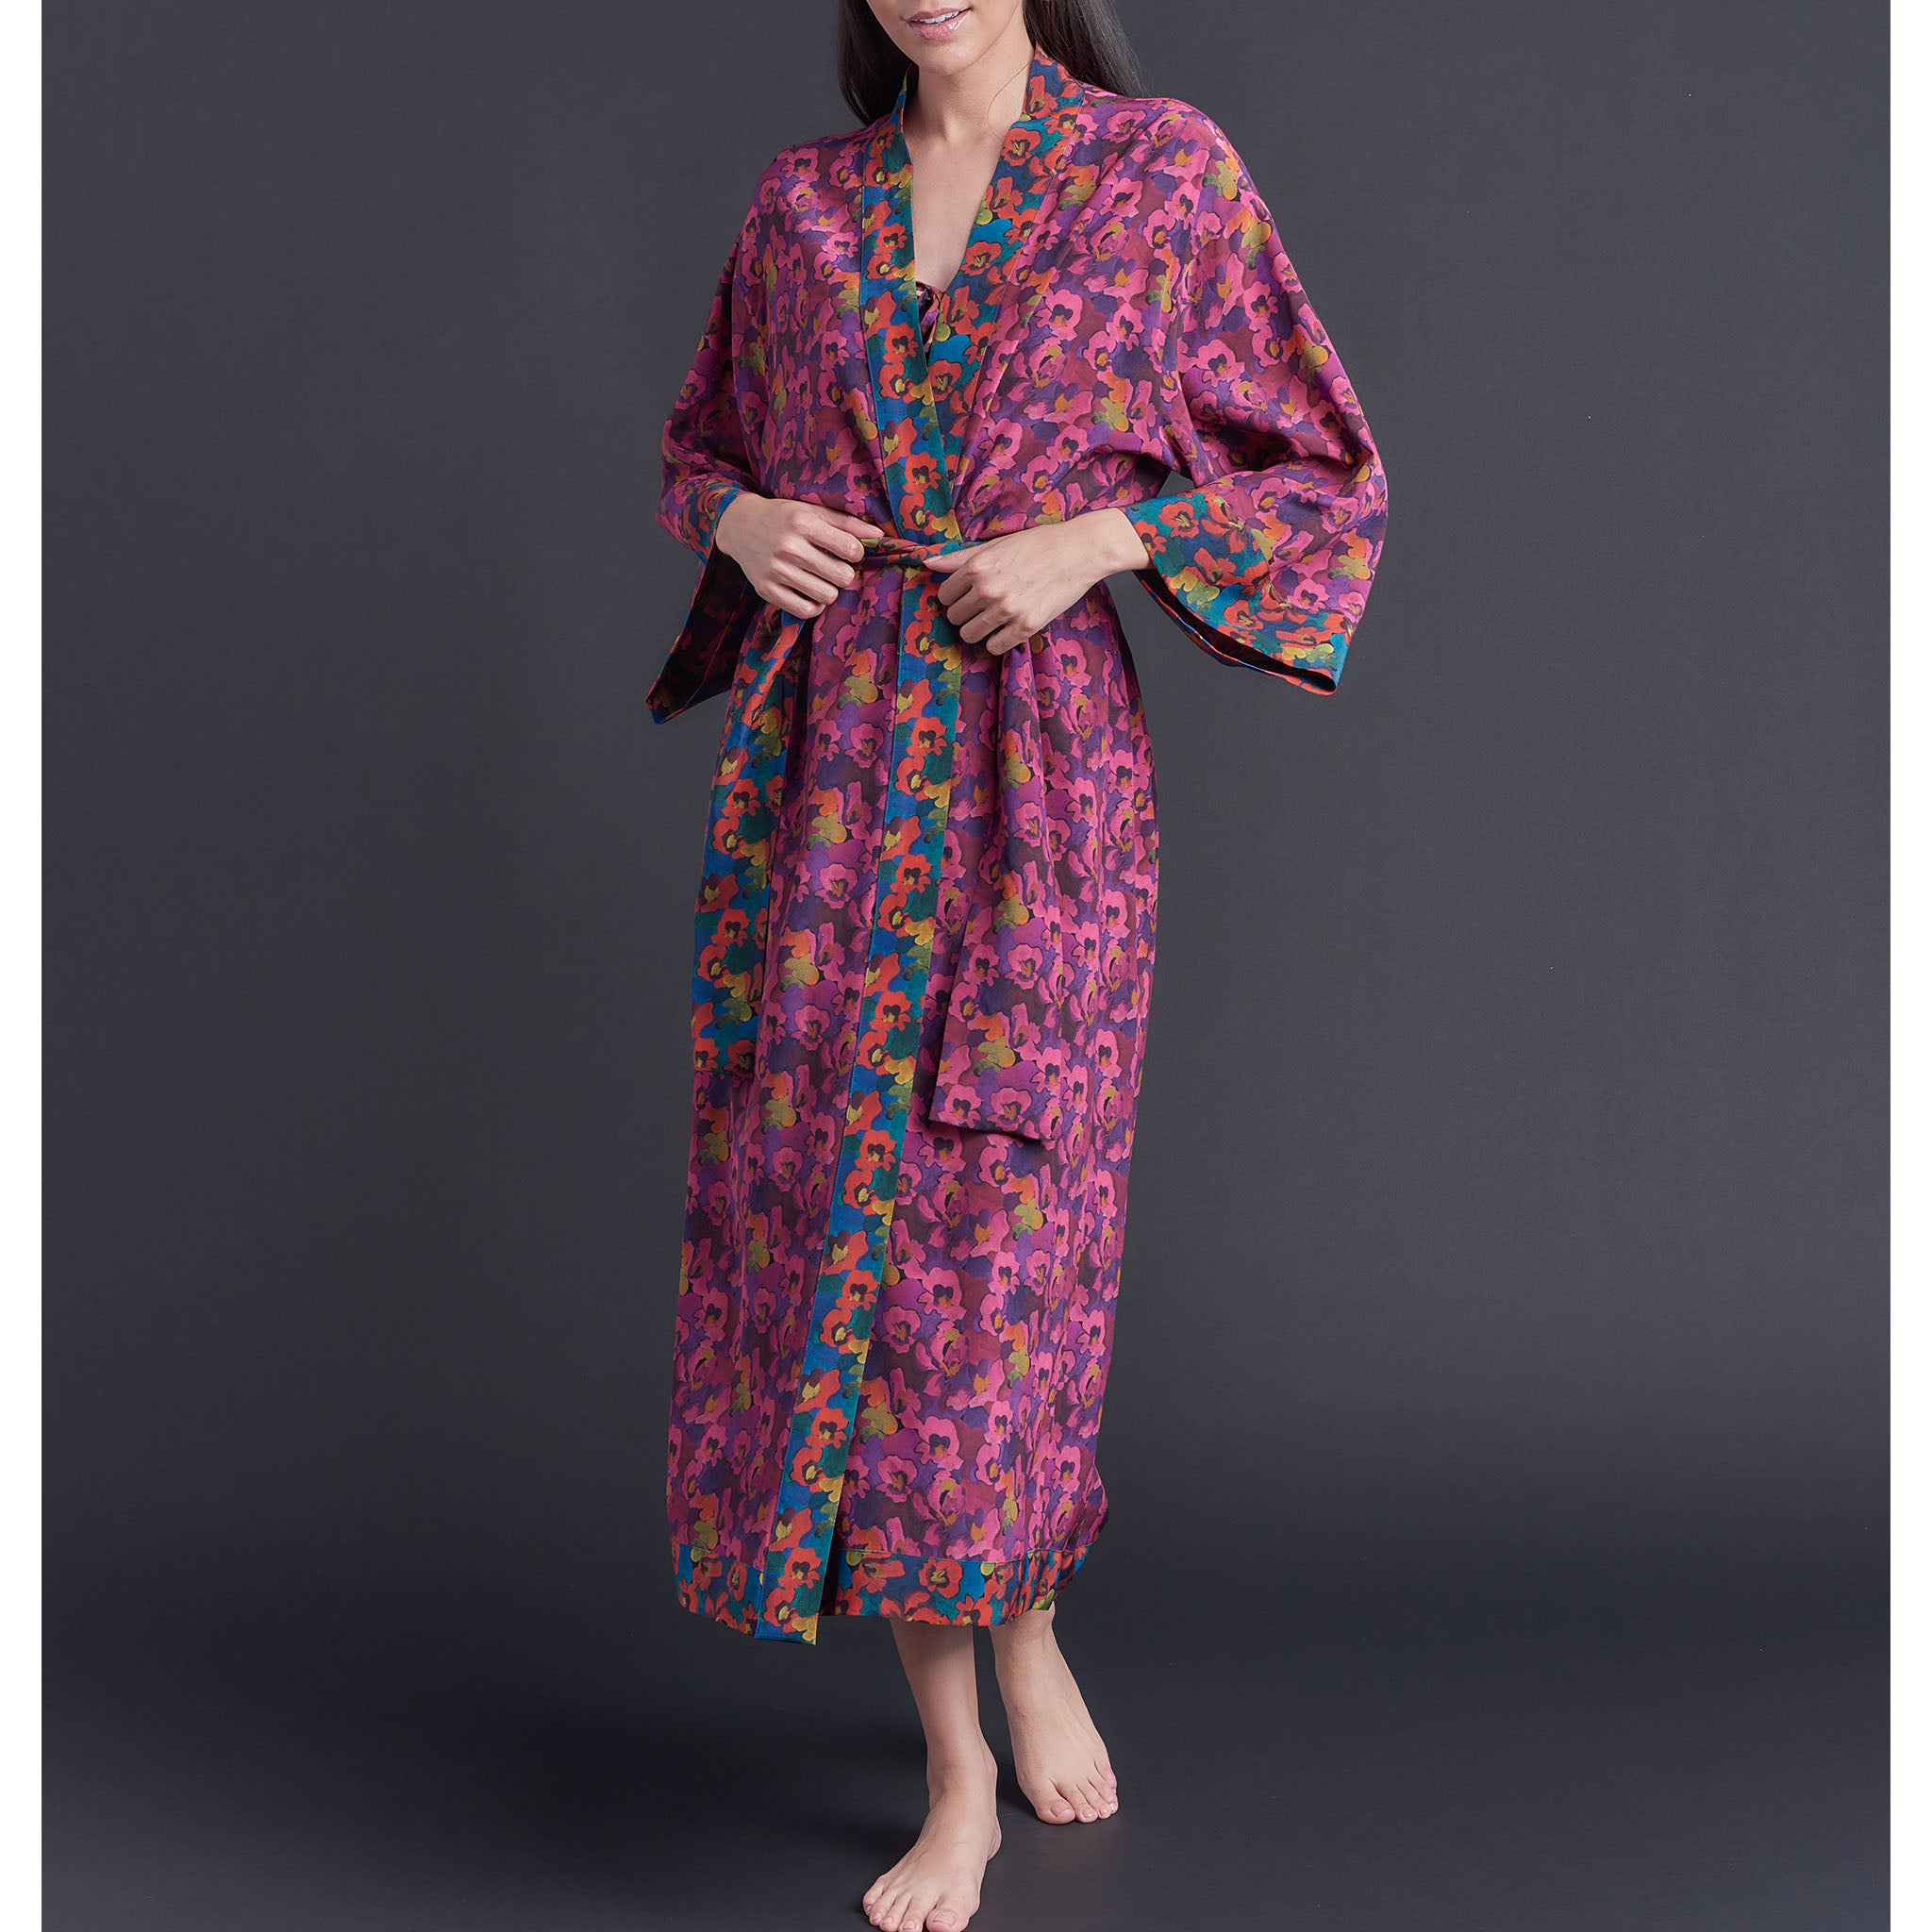 Asteria Kimono Robe in Gemma Rose Liberty of London Print Silk Crepe De Chine